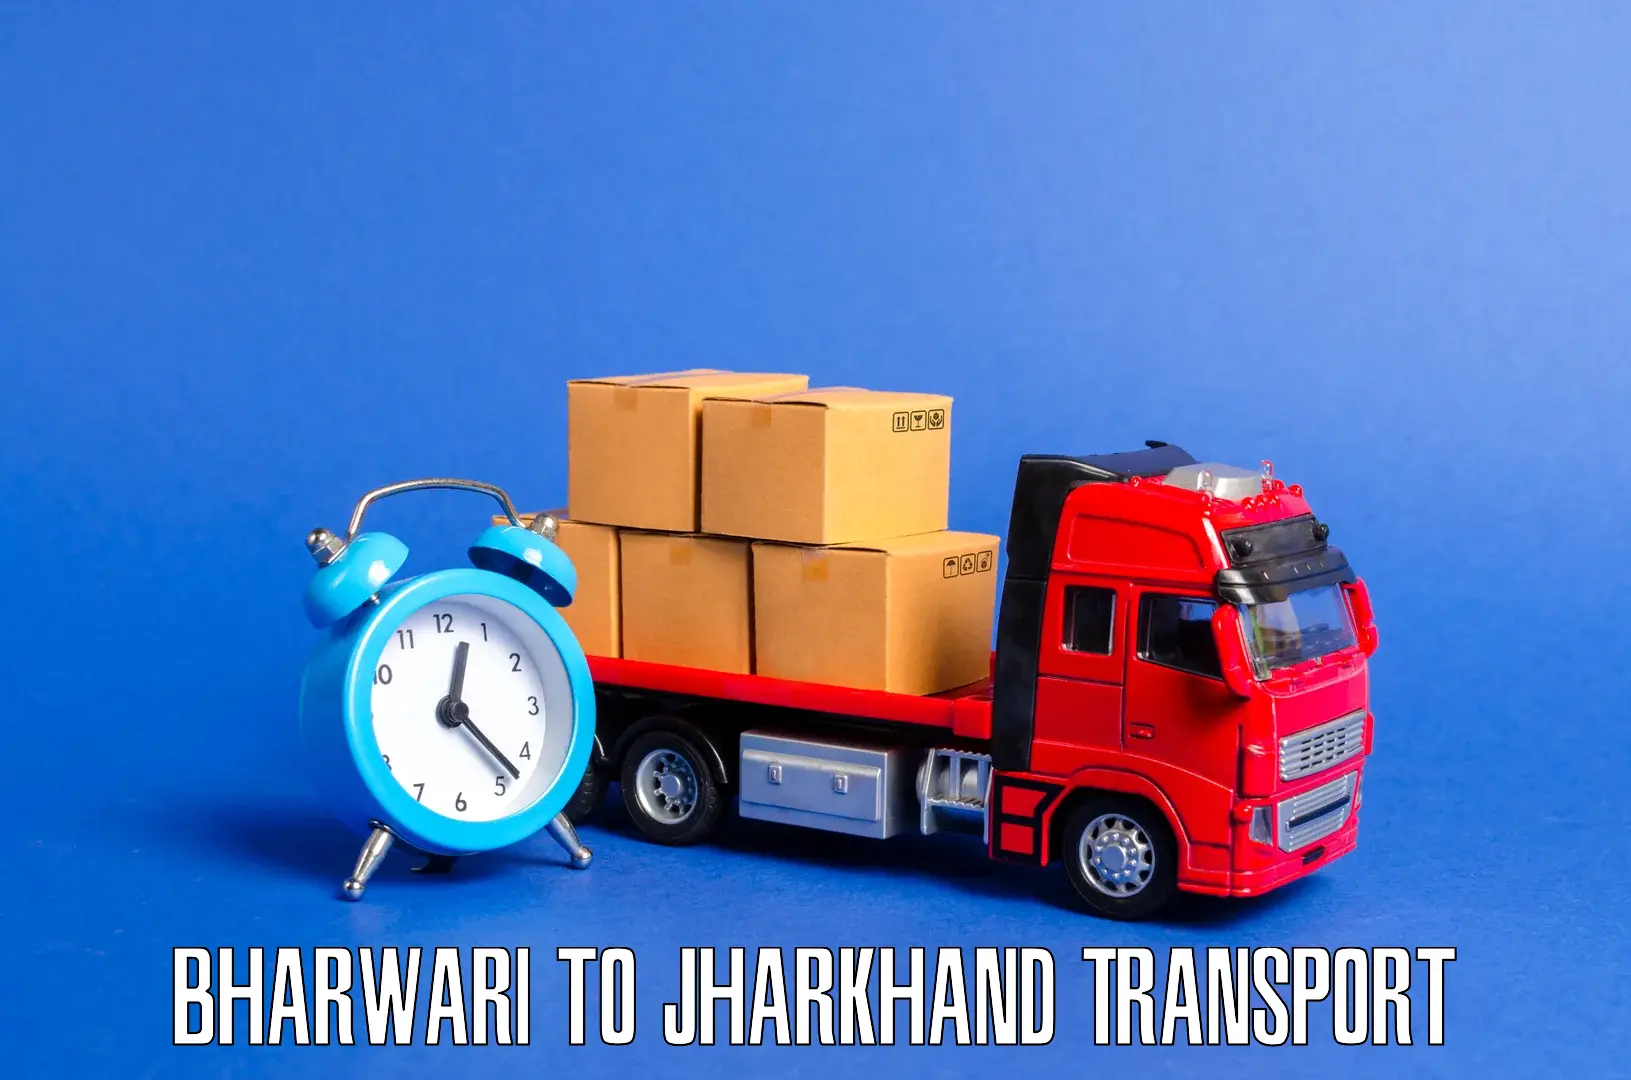 Express transport services Bharwari to Seraikela Kharsawan